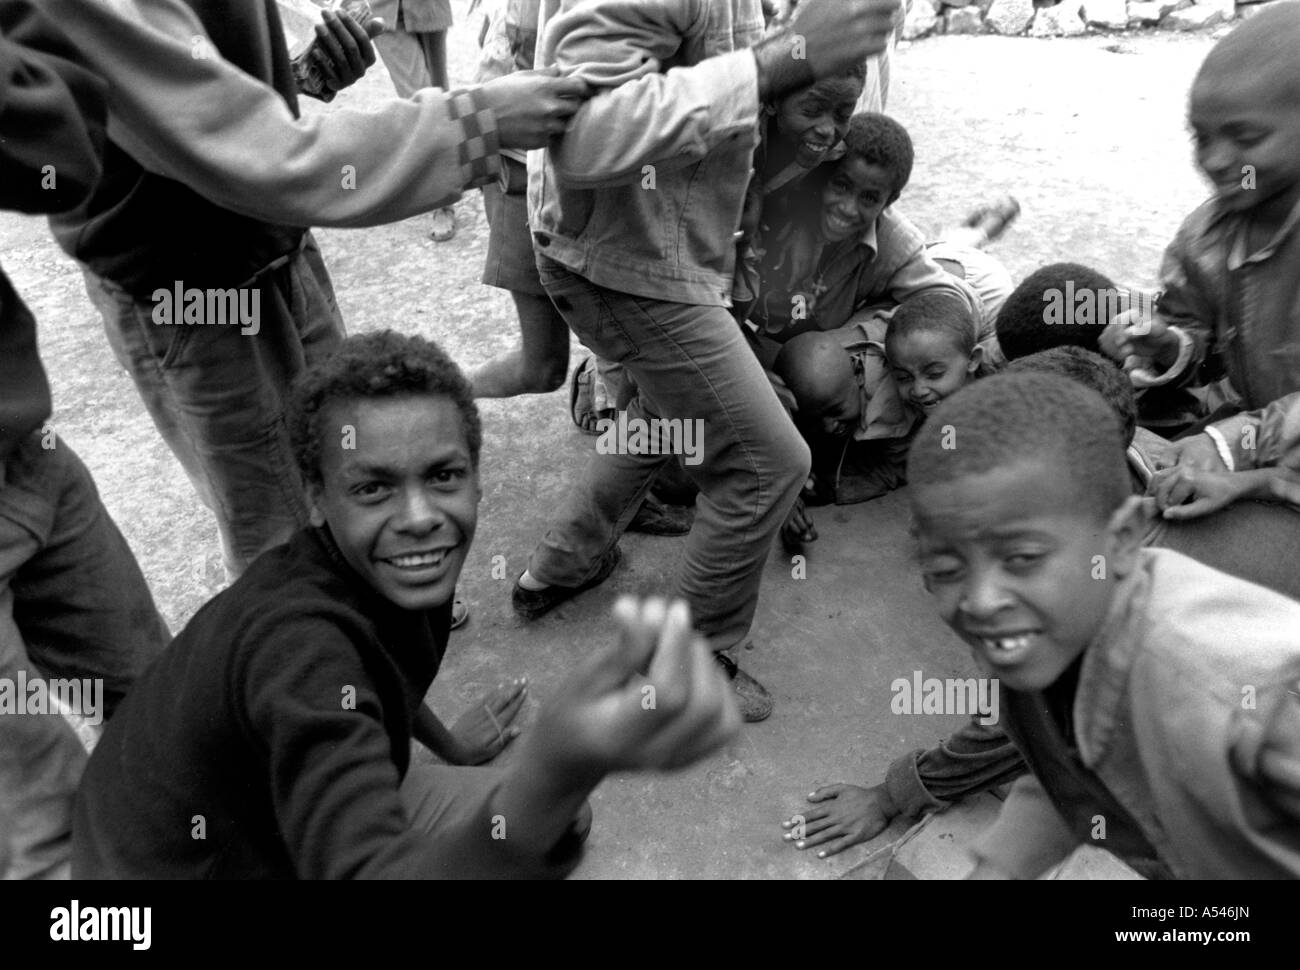 Painet HM1745 in bianco e nero di bambini di strada strade mekele tigray Etiopia paese nazione in via di sviluppo meno economicamente Foto Stock